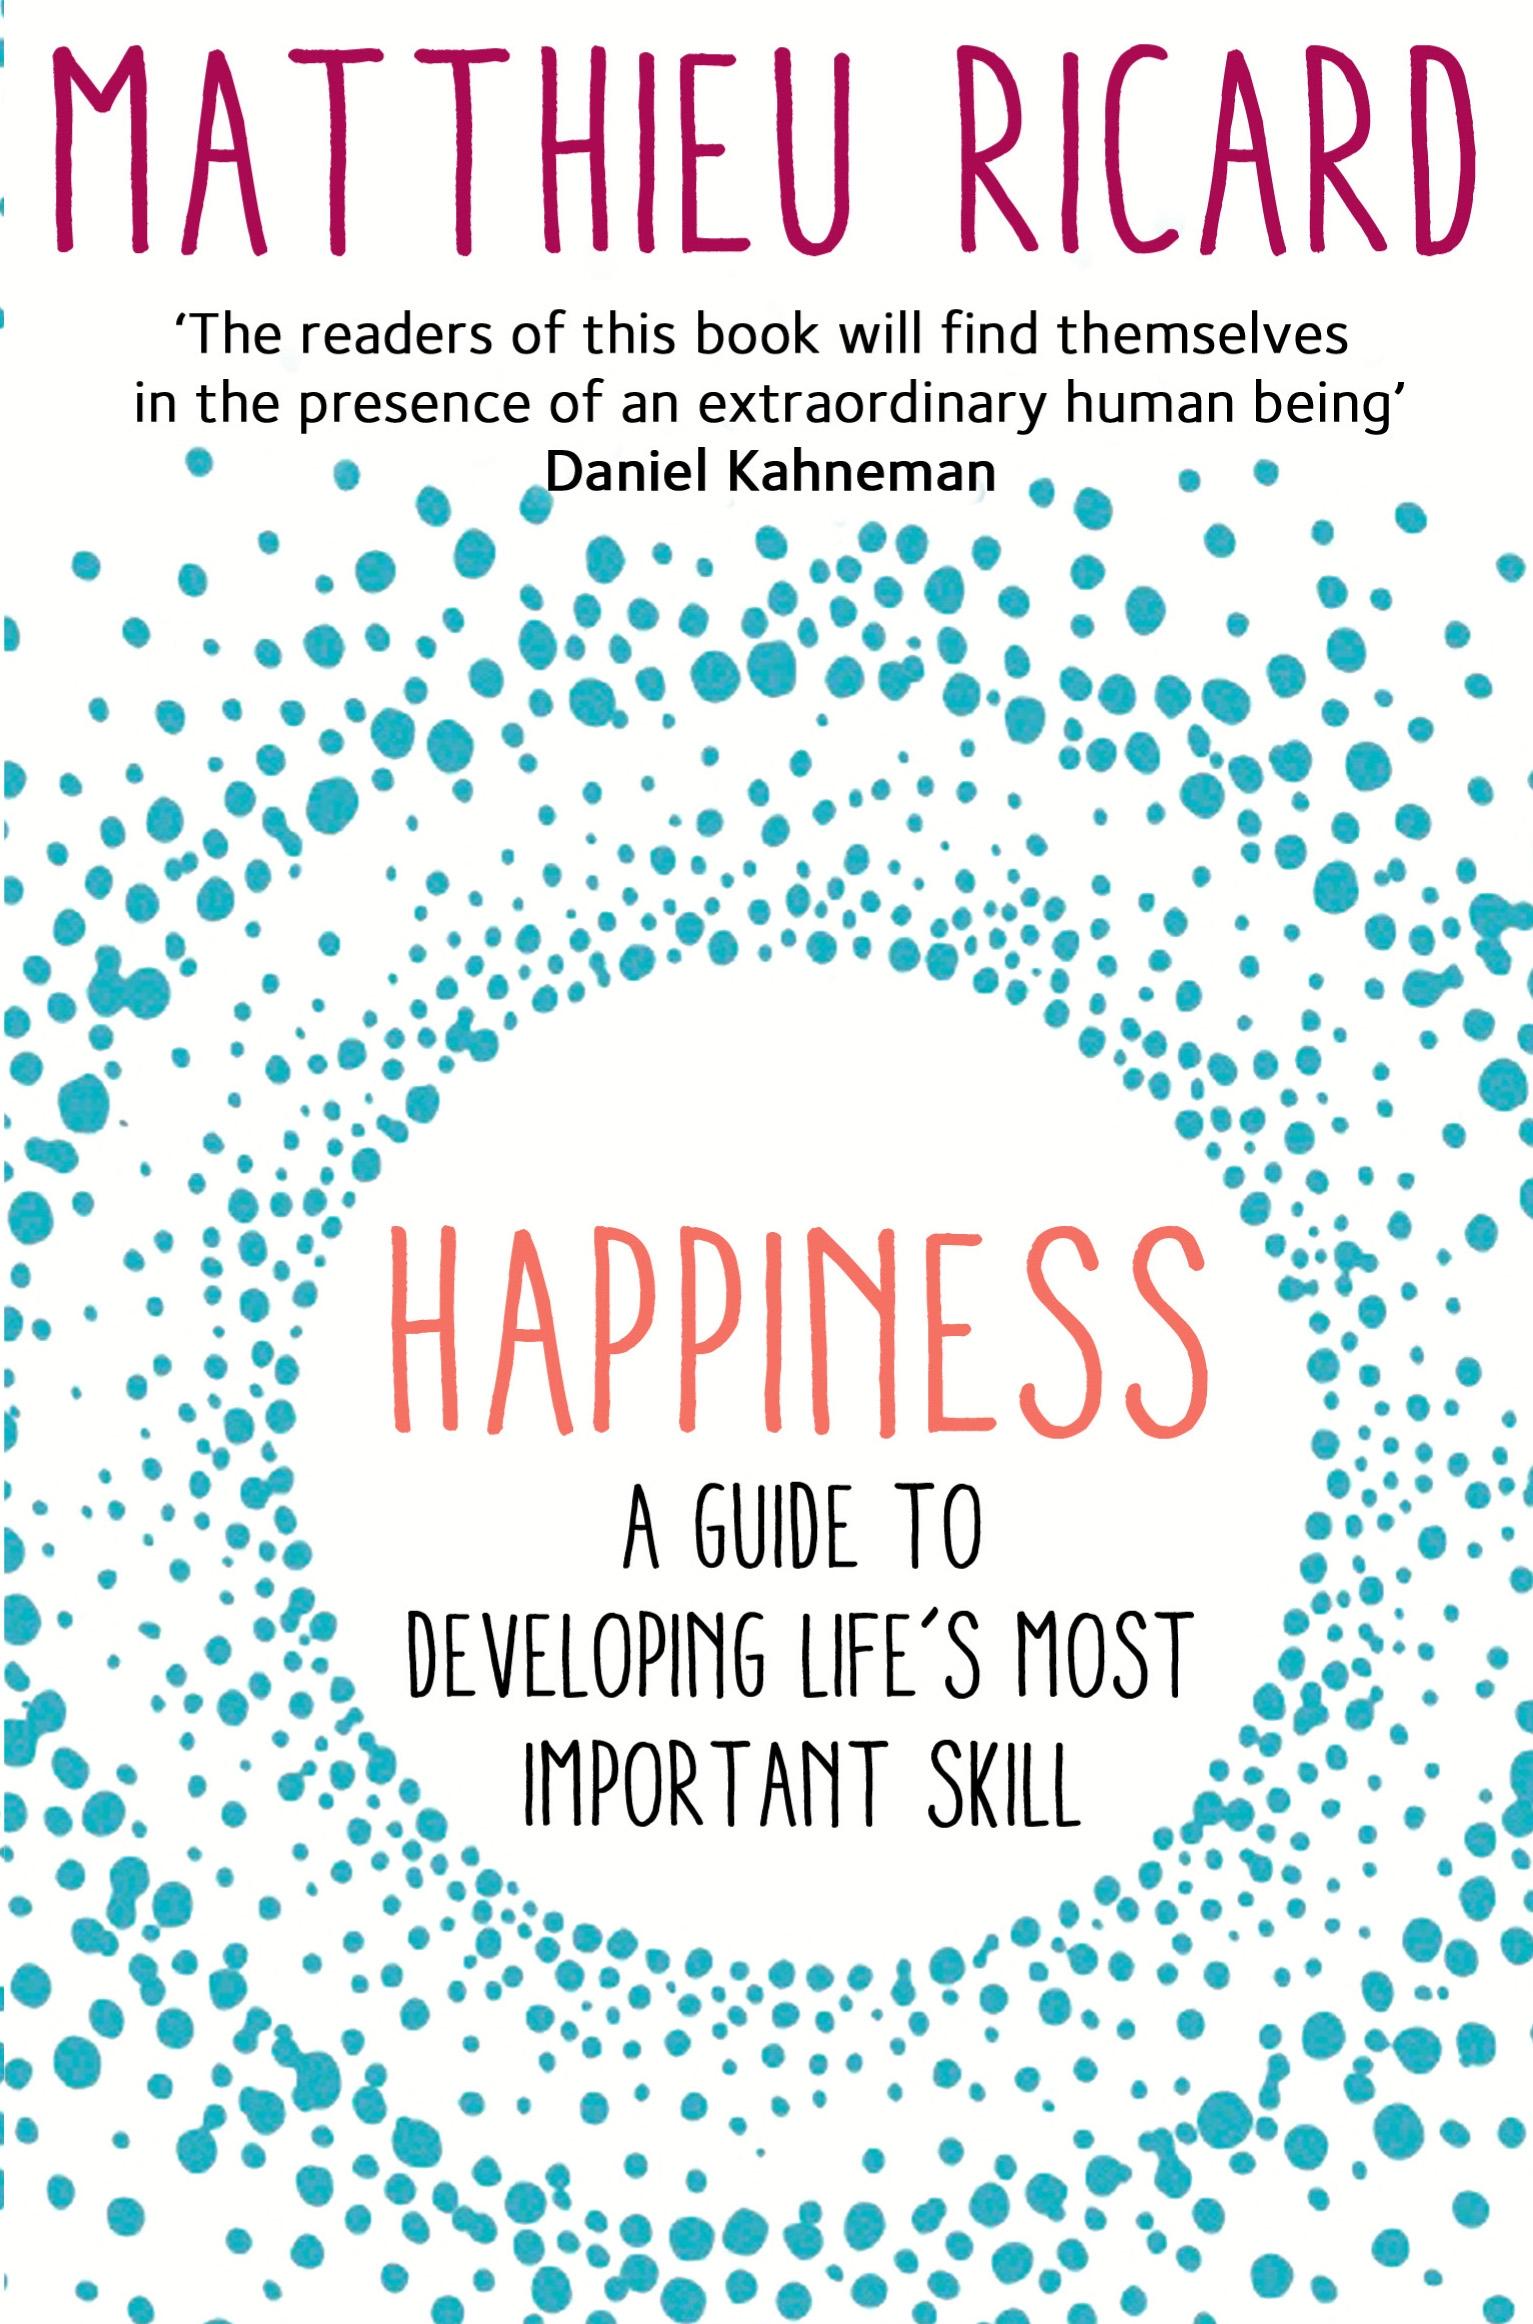 Happiness / A Guide to Developing Life's Most Important Skill / Matthieu Ricard / Taschenbuch / Kartoniert / Broschiert / Englisch / 2015 / Atlantic Books / EAN 9781782394815 - Ricard, Matthieu